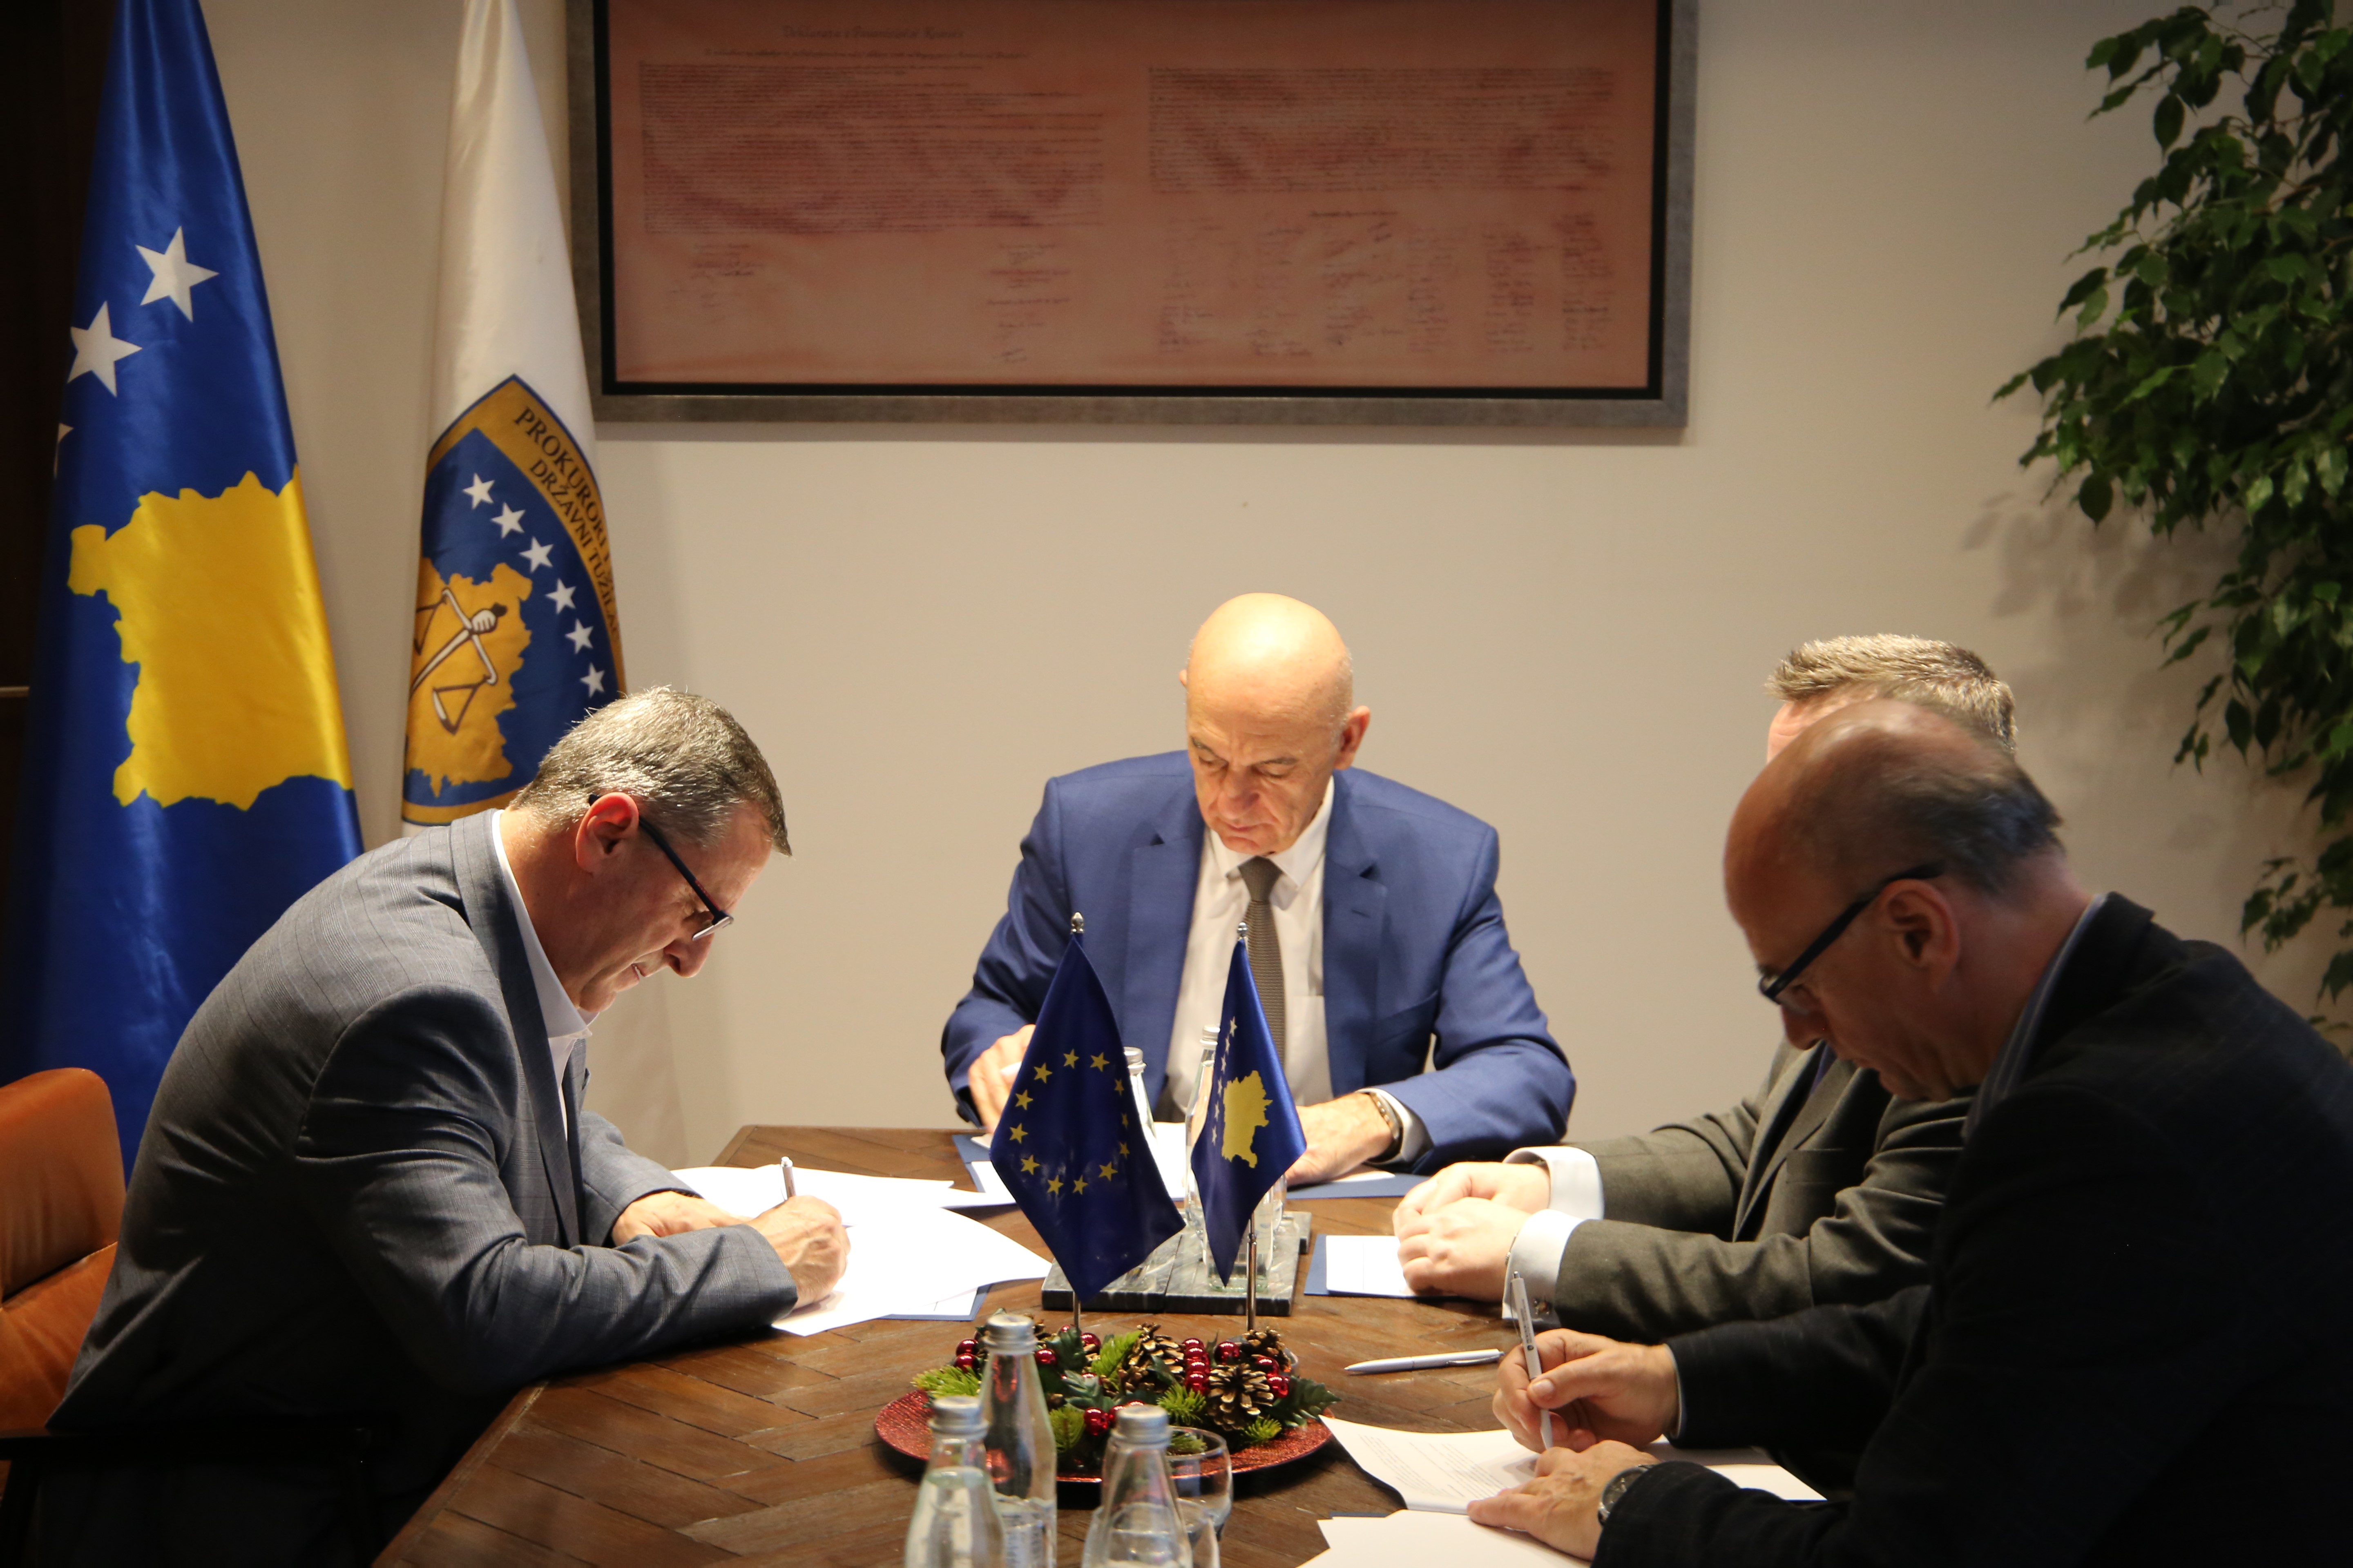 Prokurori i Shtetit dhe Këshilli i Evropës nënshkruajnë memorandum bashkëpunimi për shkëmbimin e përvojave në fushën e hetimit dhe ndjekjes penale kundër pastrimit të parave